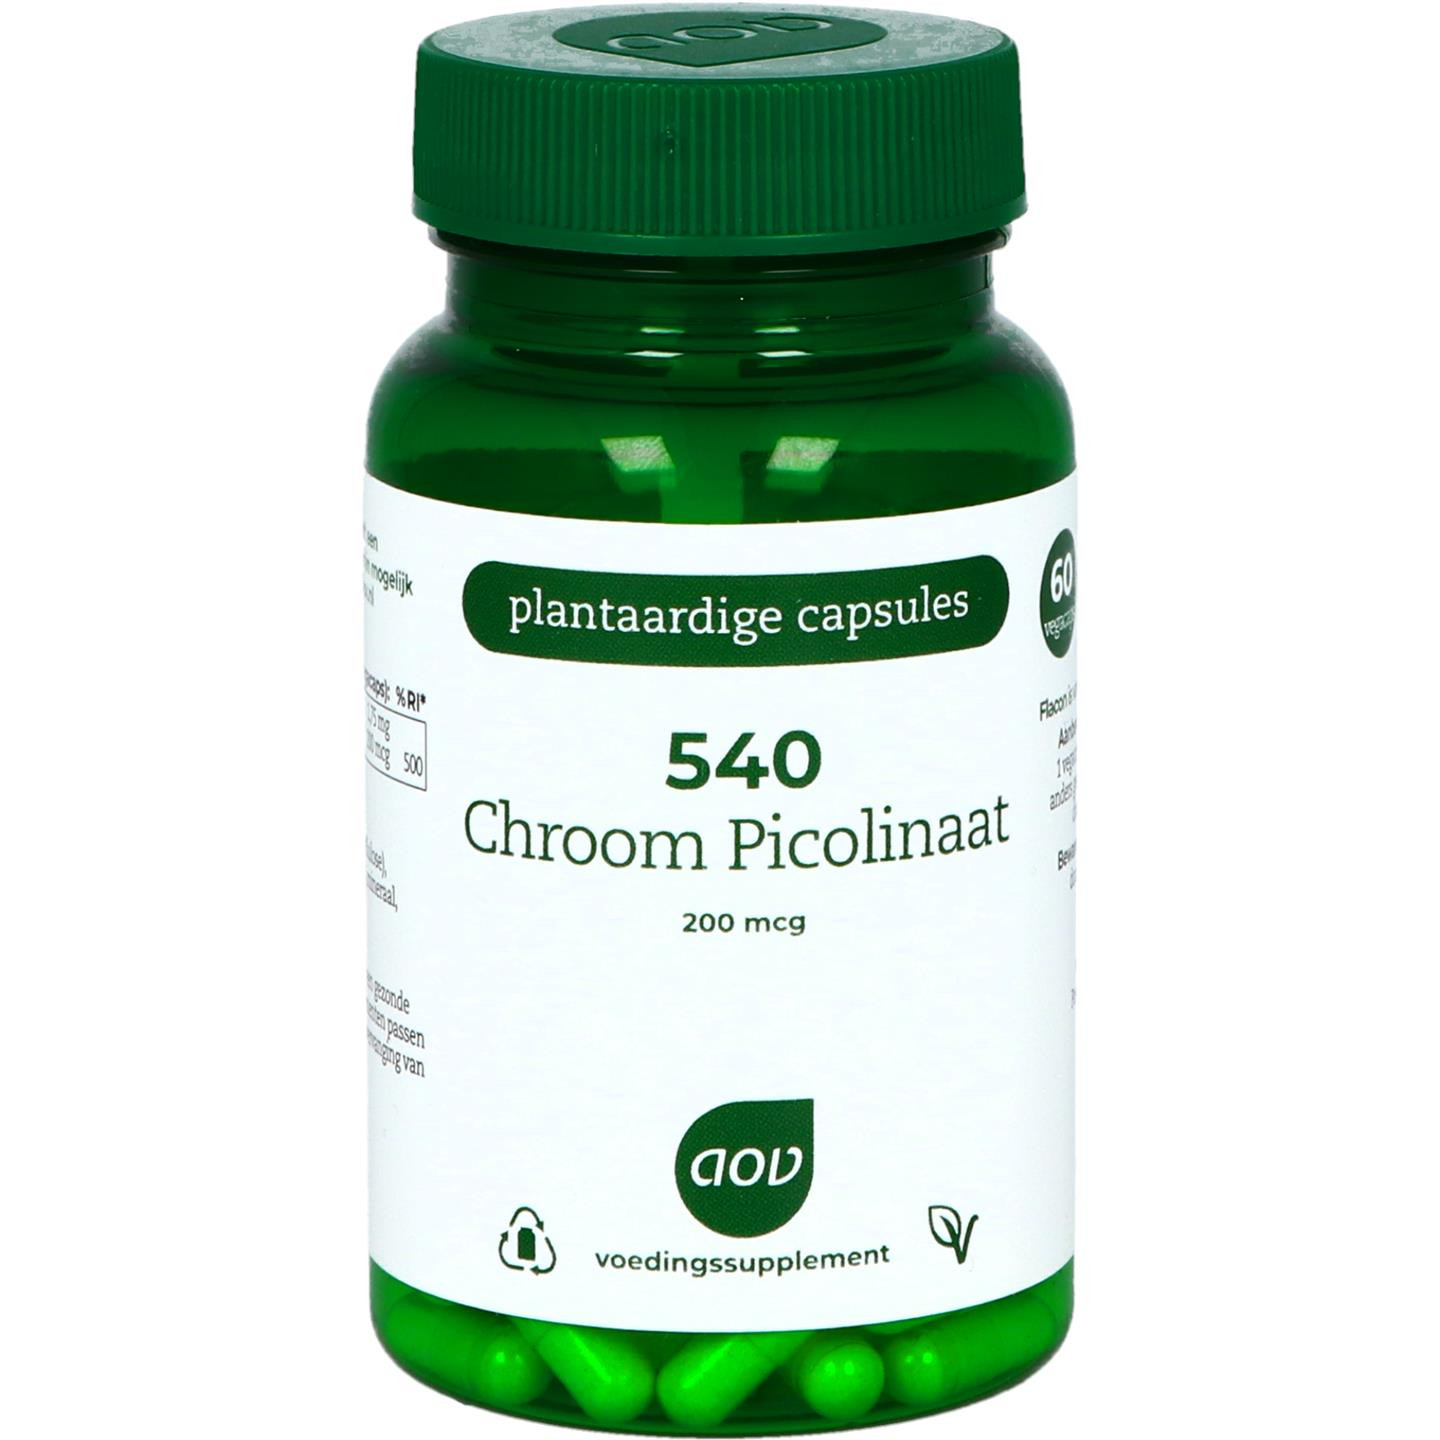 540 Chroom Picolinaat 200 mcg